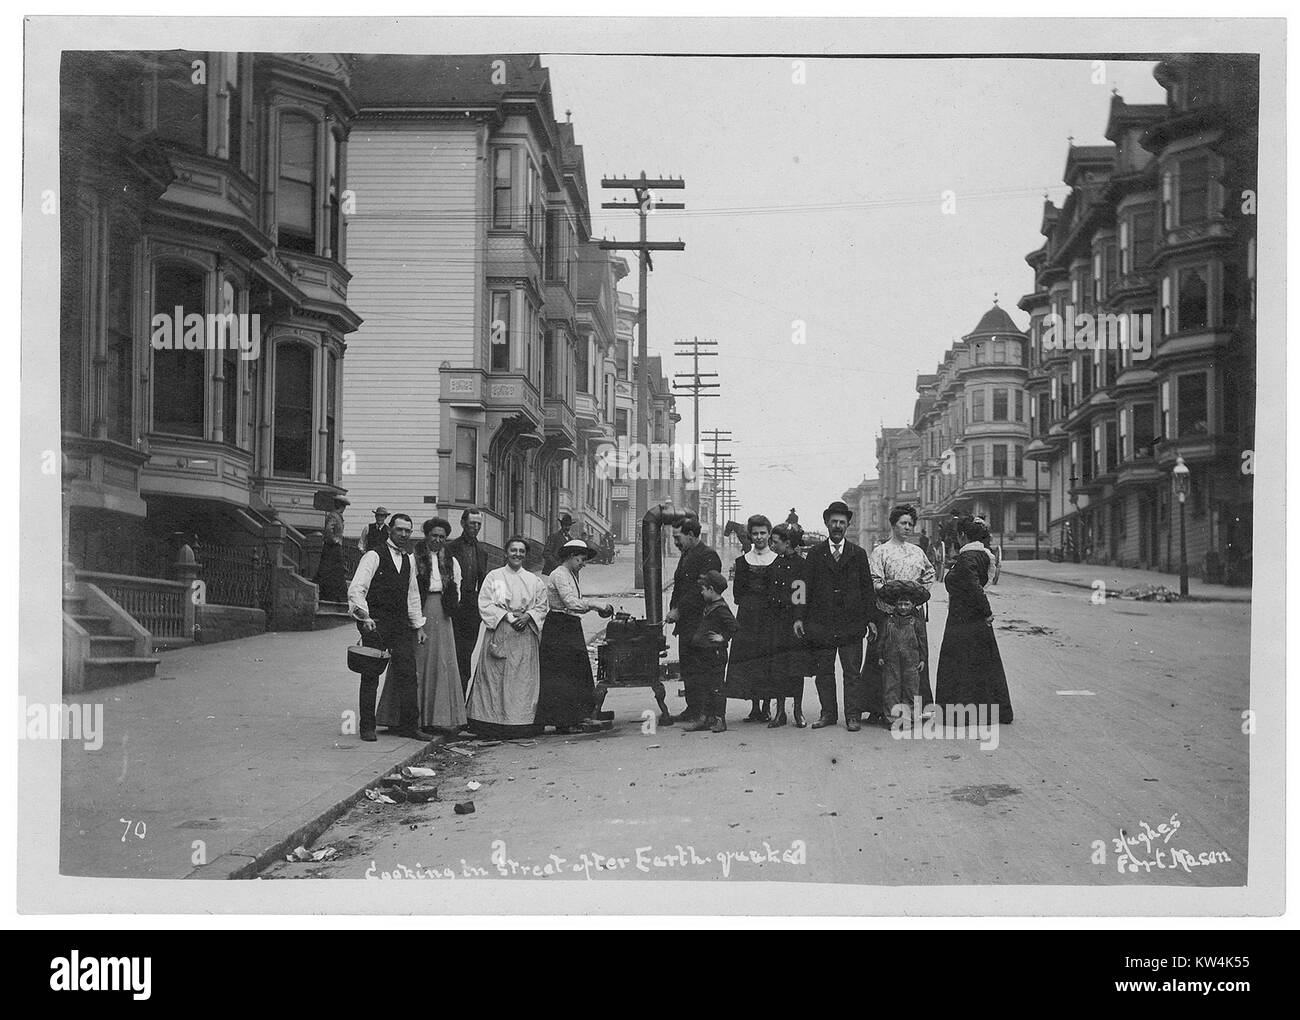 Menschen kochen in den Straßen von San Francisco nach dem Erdbeben von 1906, 1906. Mit freundlicher Genehmigung der nationalen Archive. Stockfoto